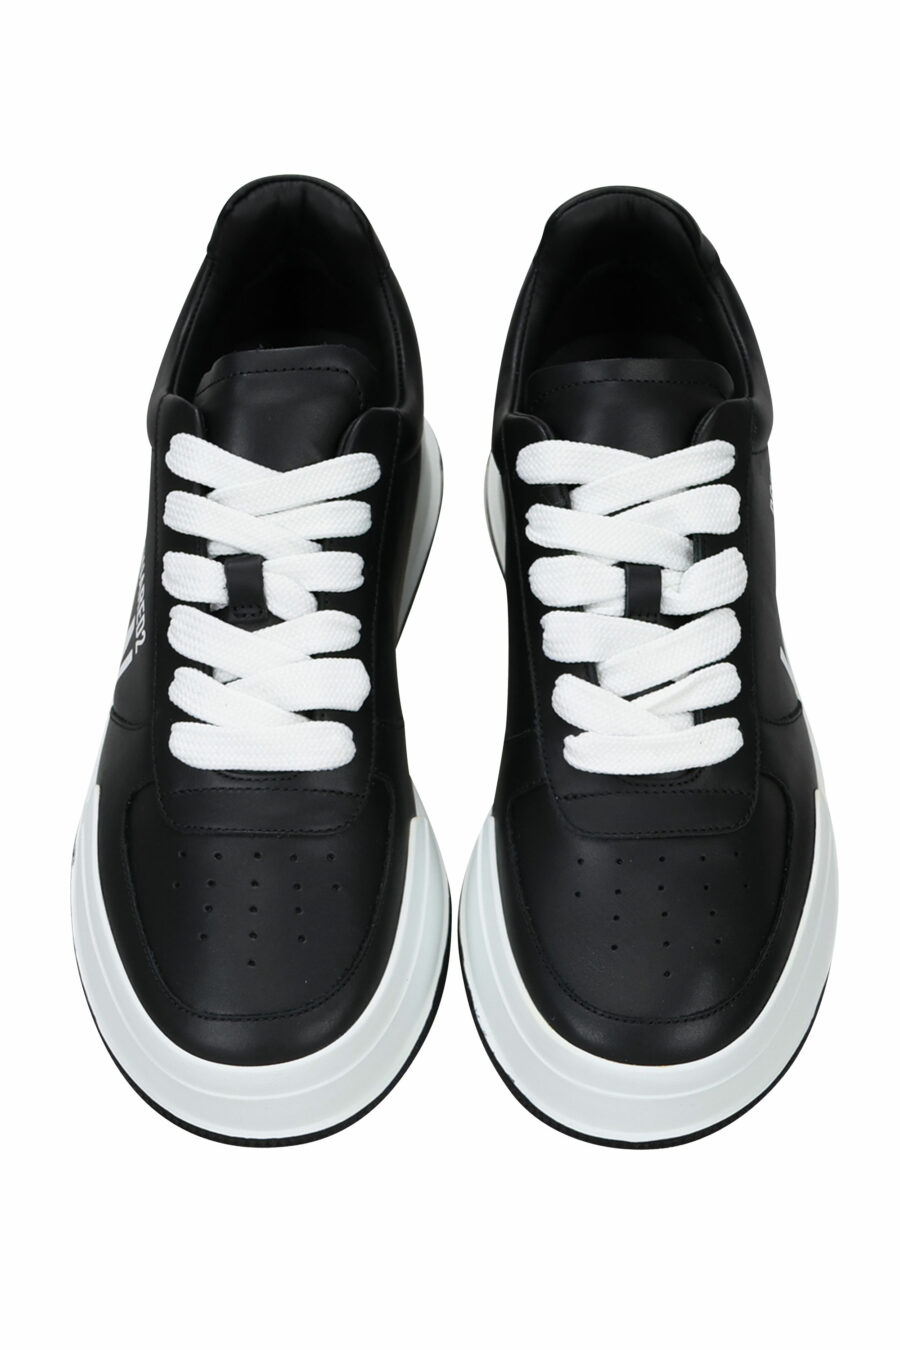 Zapatillas negras con logo "icon" y suela blanca - 8055777248911 4